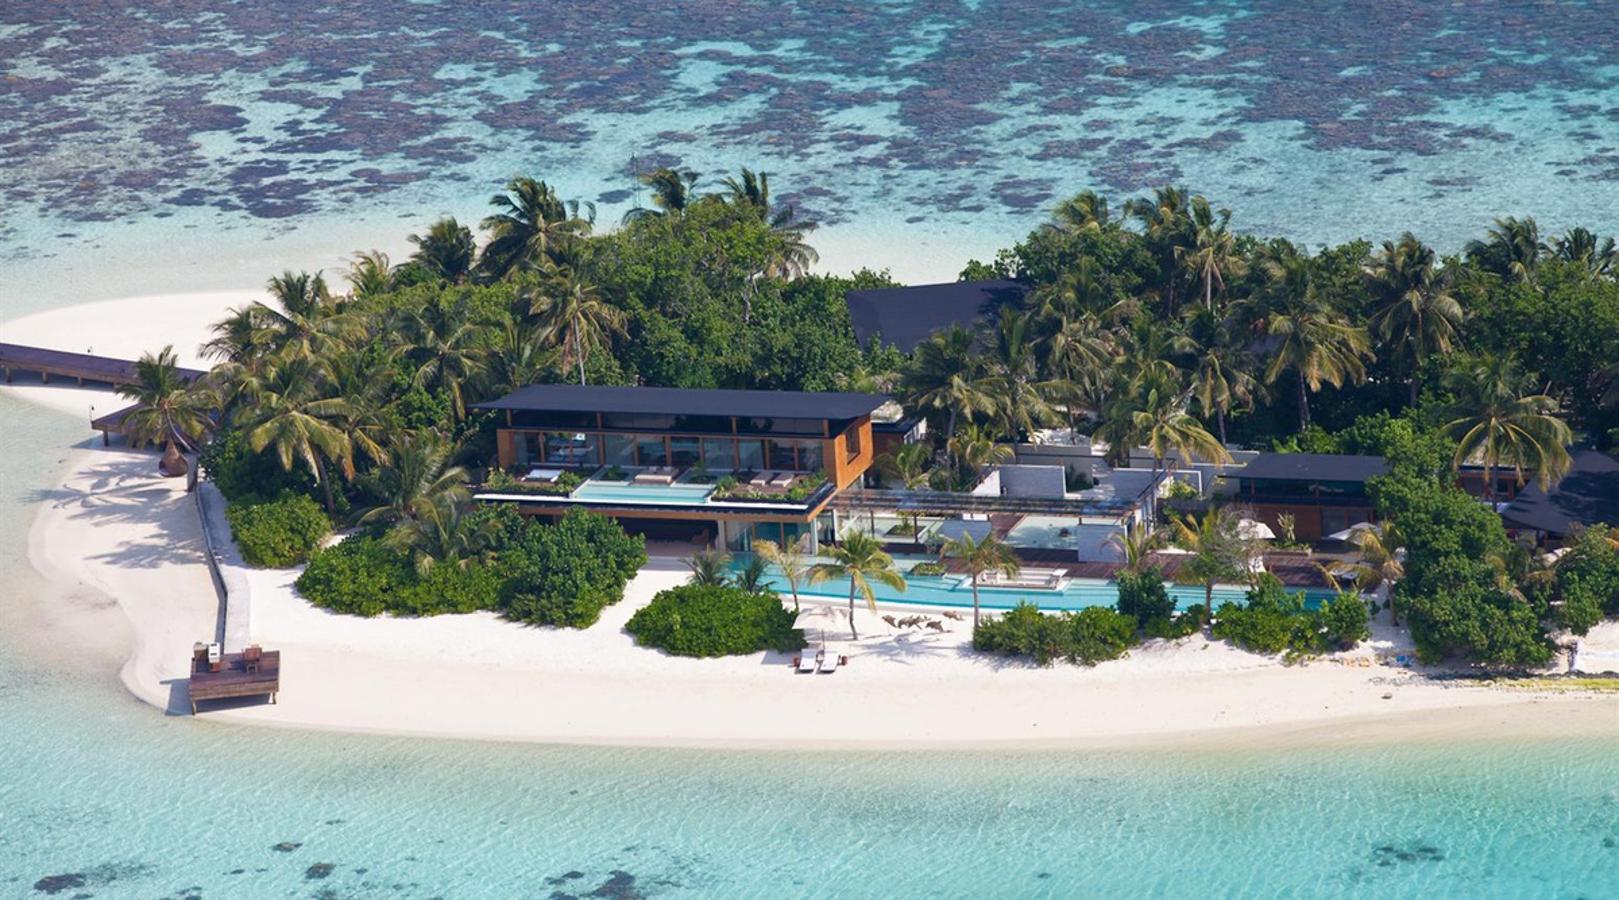 La isla de Maldivas de 40.000 dólares la noche. Ya se sabe que Maldivas es uno de los mayores paraísos que existen, y aunque su punto fuerte son los lujosos Resorts, hay algunos cuyos precios son tan altos que solo unos pocos privilegiados pueden disfrutar de ellos. Verdaderos templos del lujo en donde vivir experiencias inolvidables. Uno de los favoritos de los millonarios es Coco Privé Kuda Hithi Island. Una isla privada que parece sacada de una película de ciencia ficción.